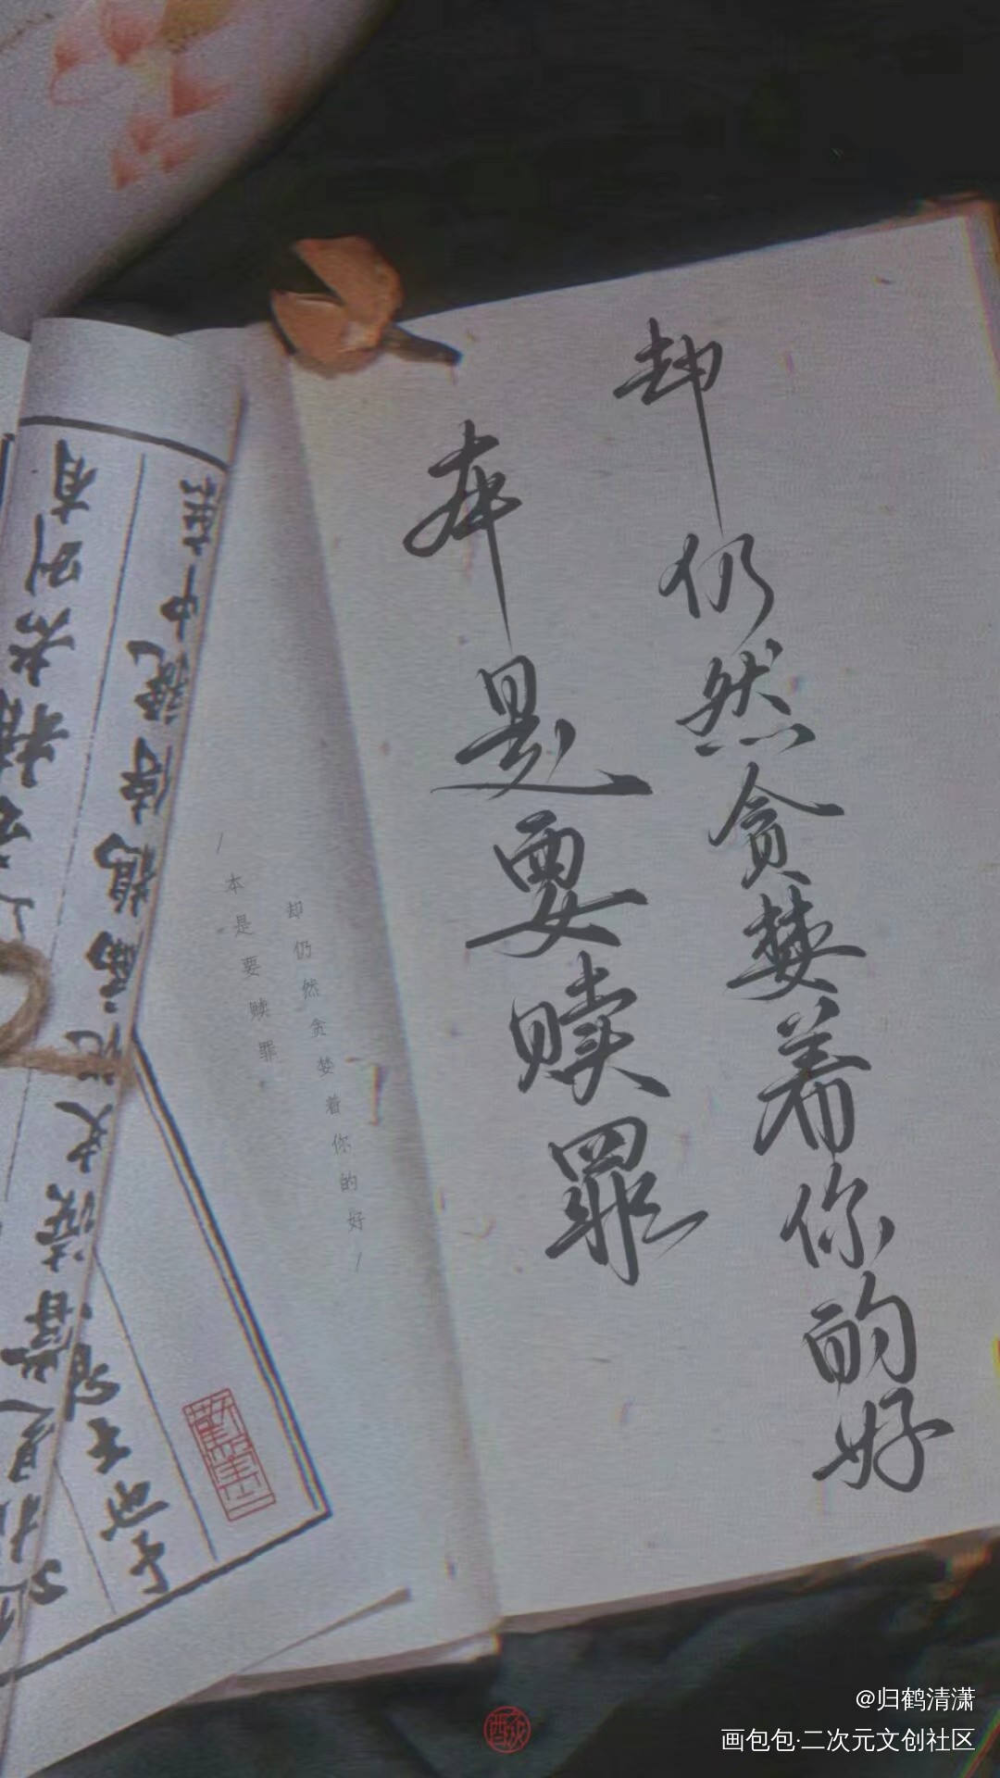 二哈同人句子板写_二哈和他的白猫师尊数位板手写墨燃楚晚宁同人字体设计板写手写绘画作品